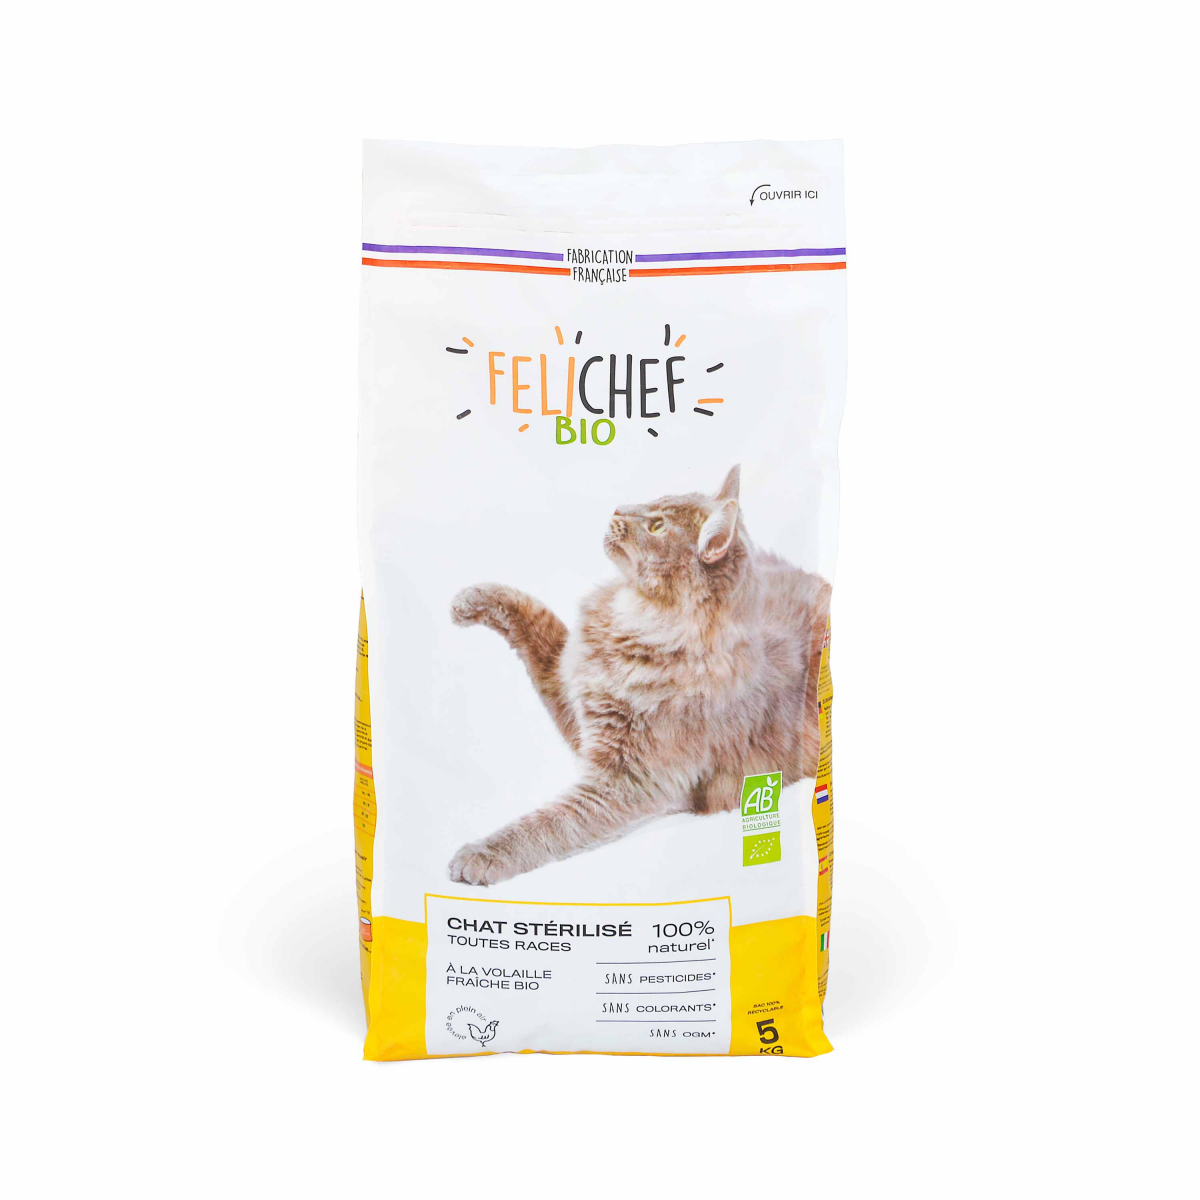 AIME Filtres anti odeur - Pour chat - Hygiène et santé pour chat - Achat &  prix